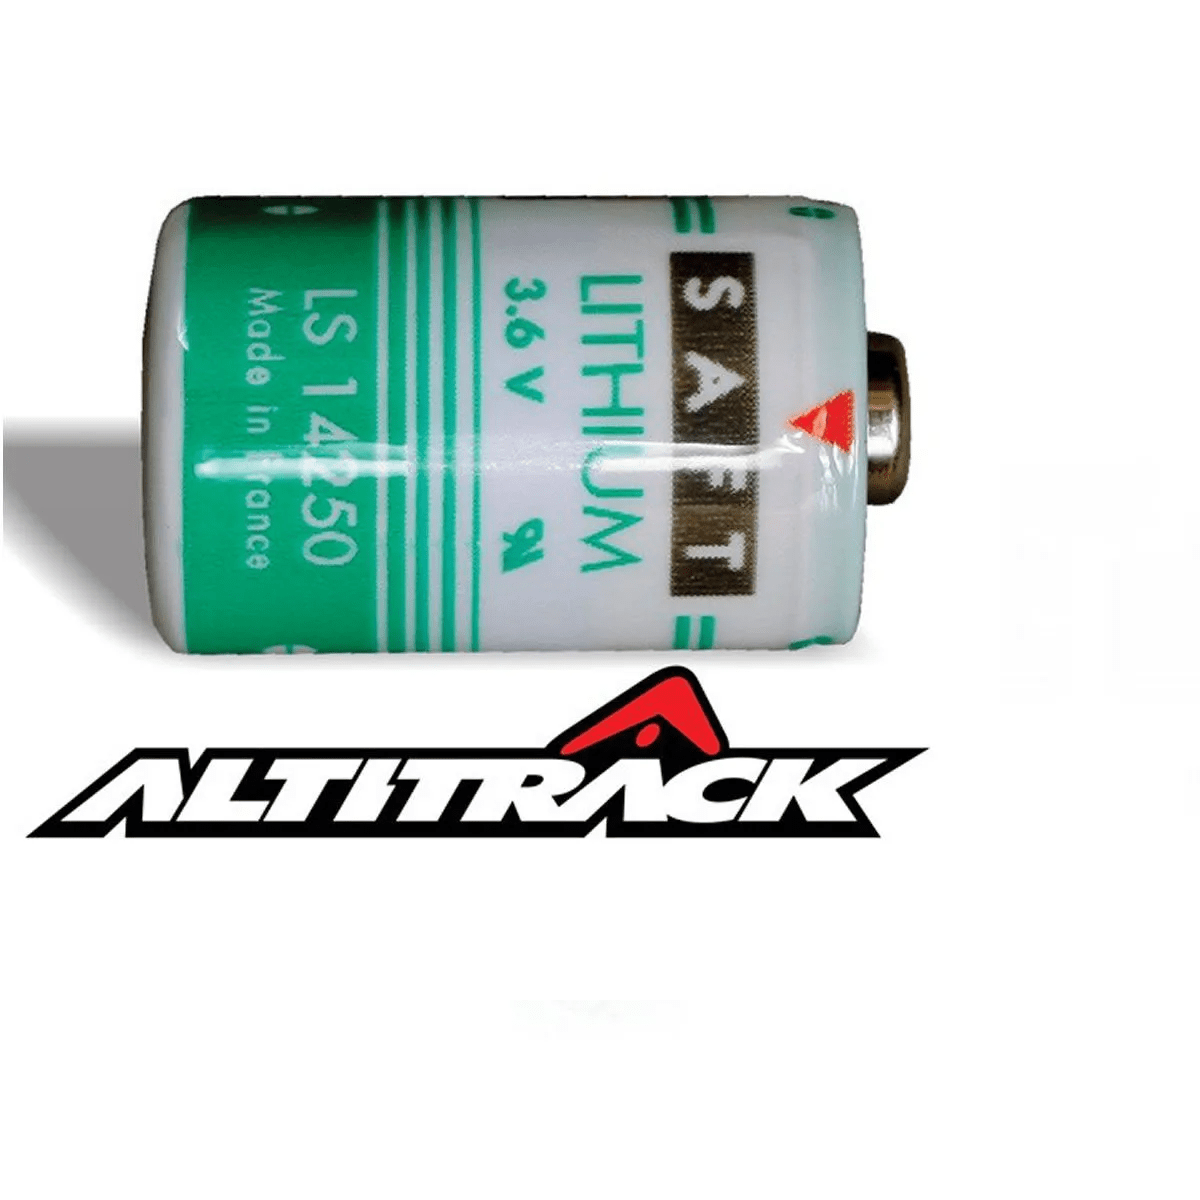 Bateria para Altitrack Paraquedismo LS14250 3,6V lithium